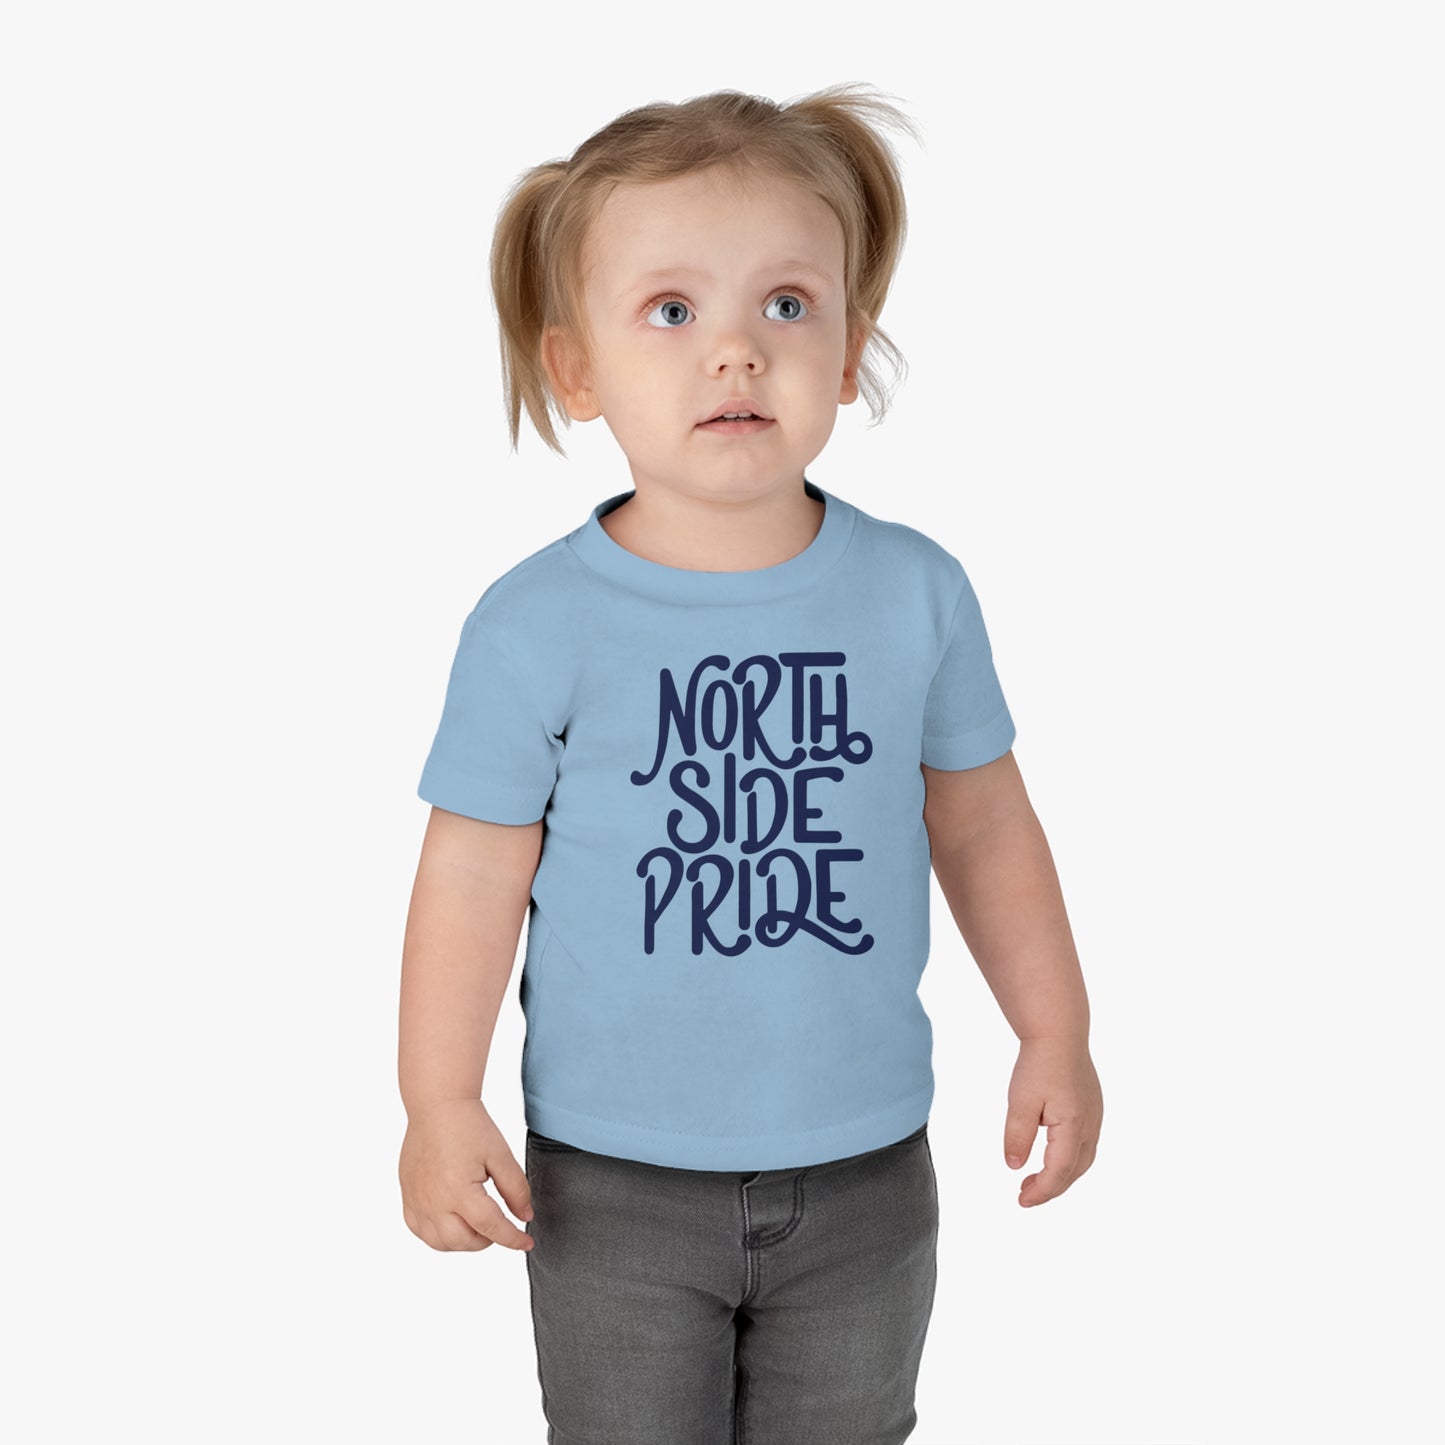 North Side Pride Infant Tee. Light Blue.